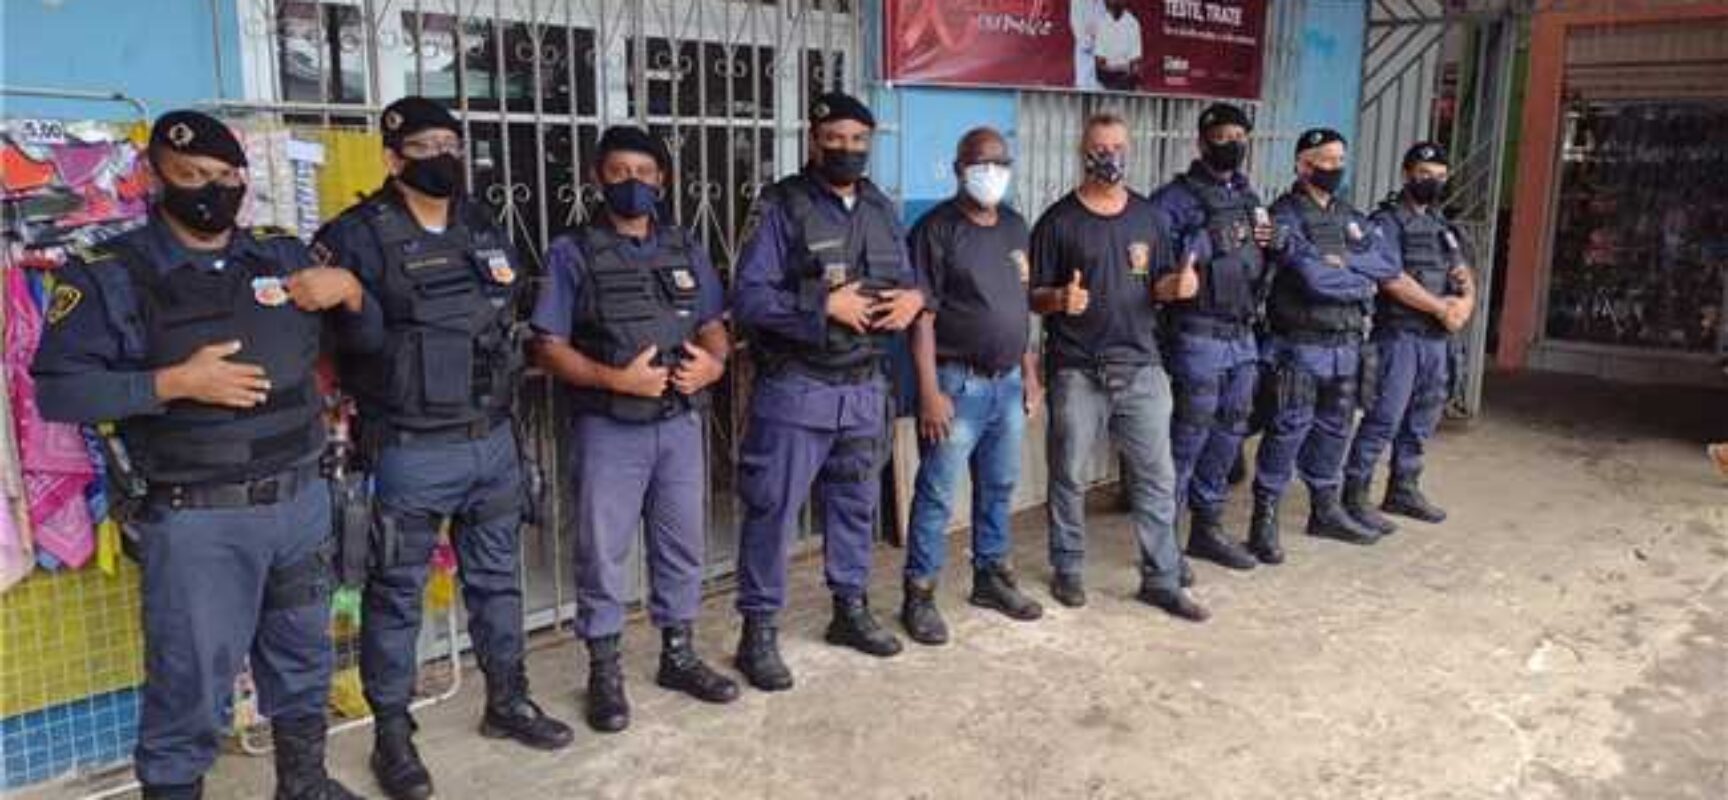 Prefeitura e Polícia Militar desenvolvem ações preventivas na Central de Abastecimento do Malhado